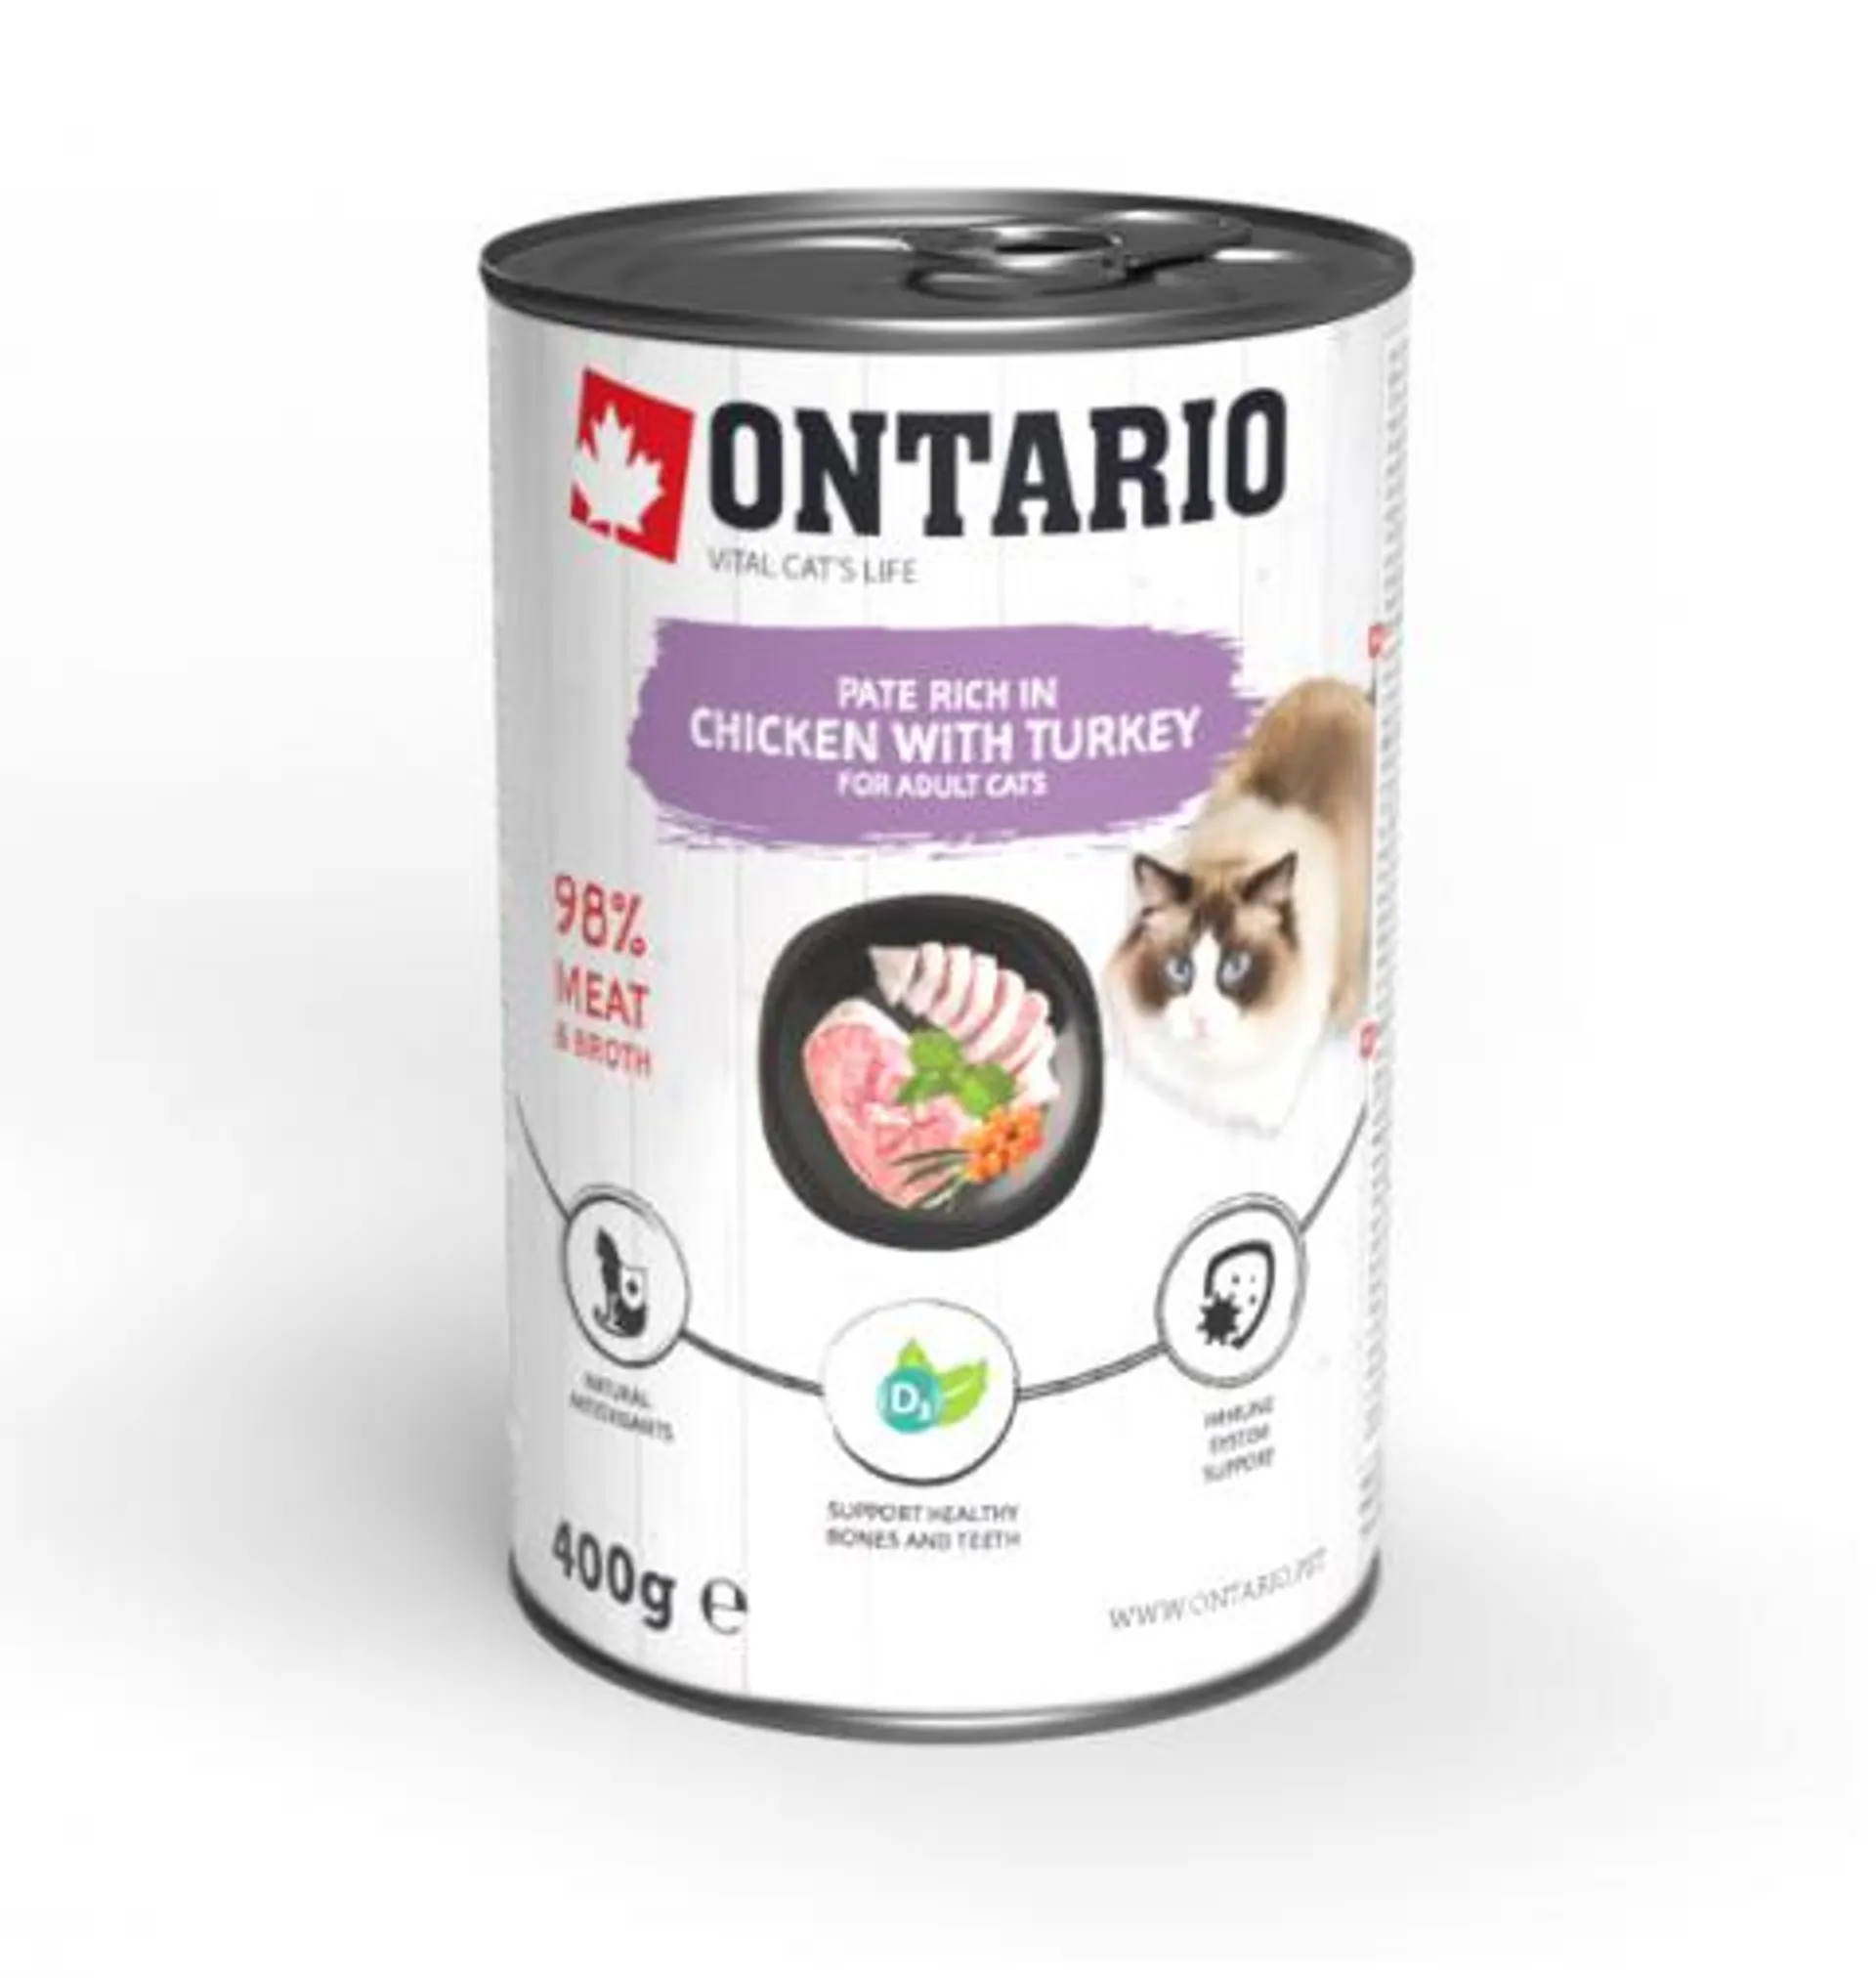 Ontario konzerva kura s morkou ochutené rakytníkom 400 g